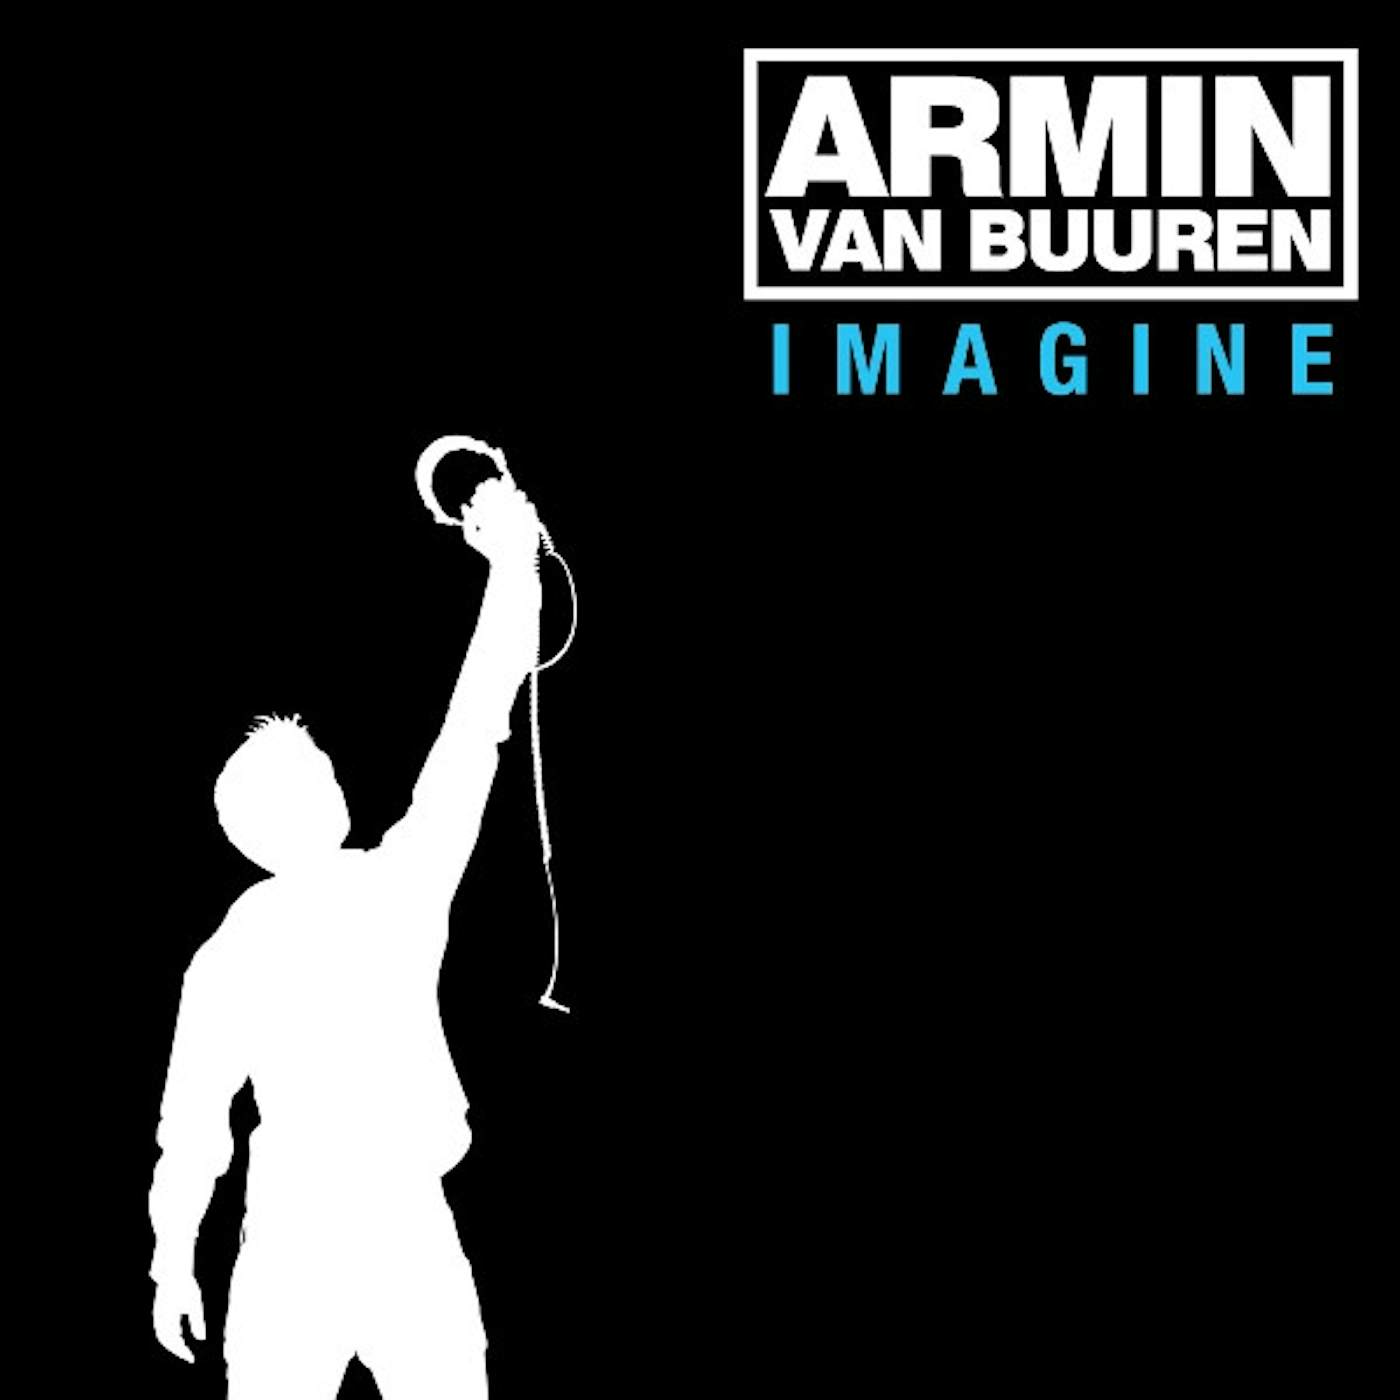 Armin van Buuren Imagine Vinyl Record